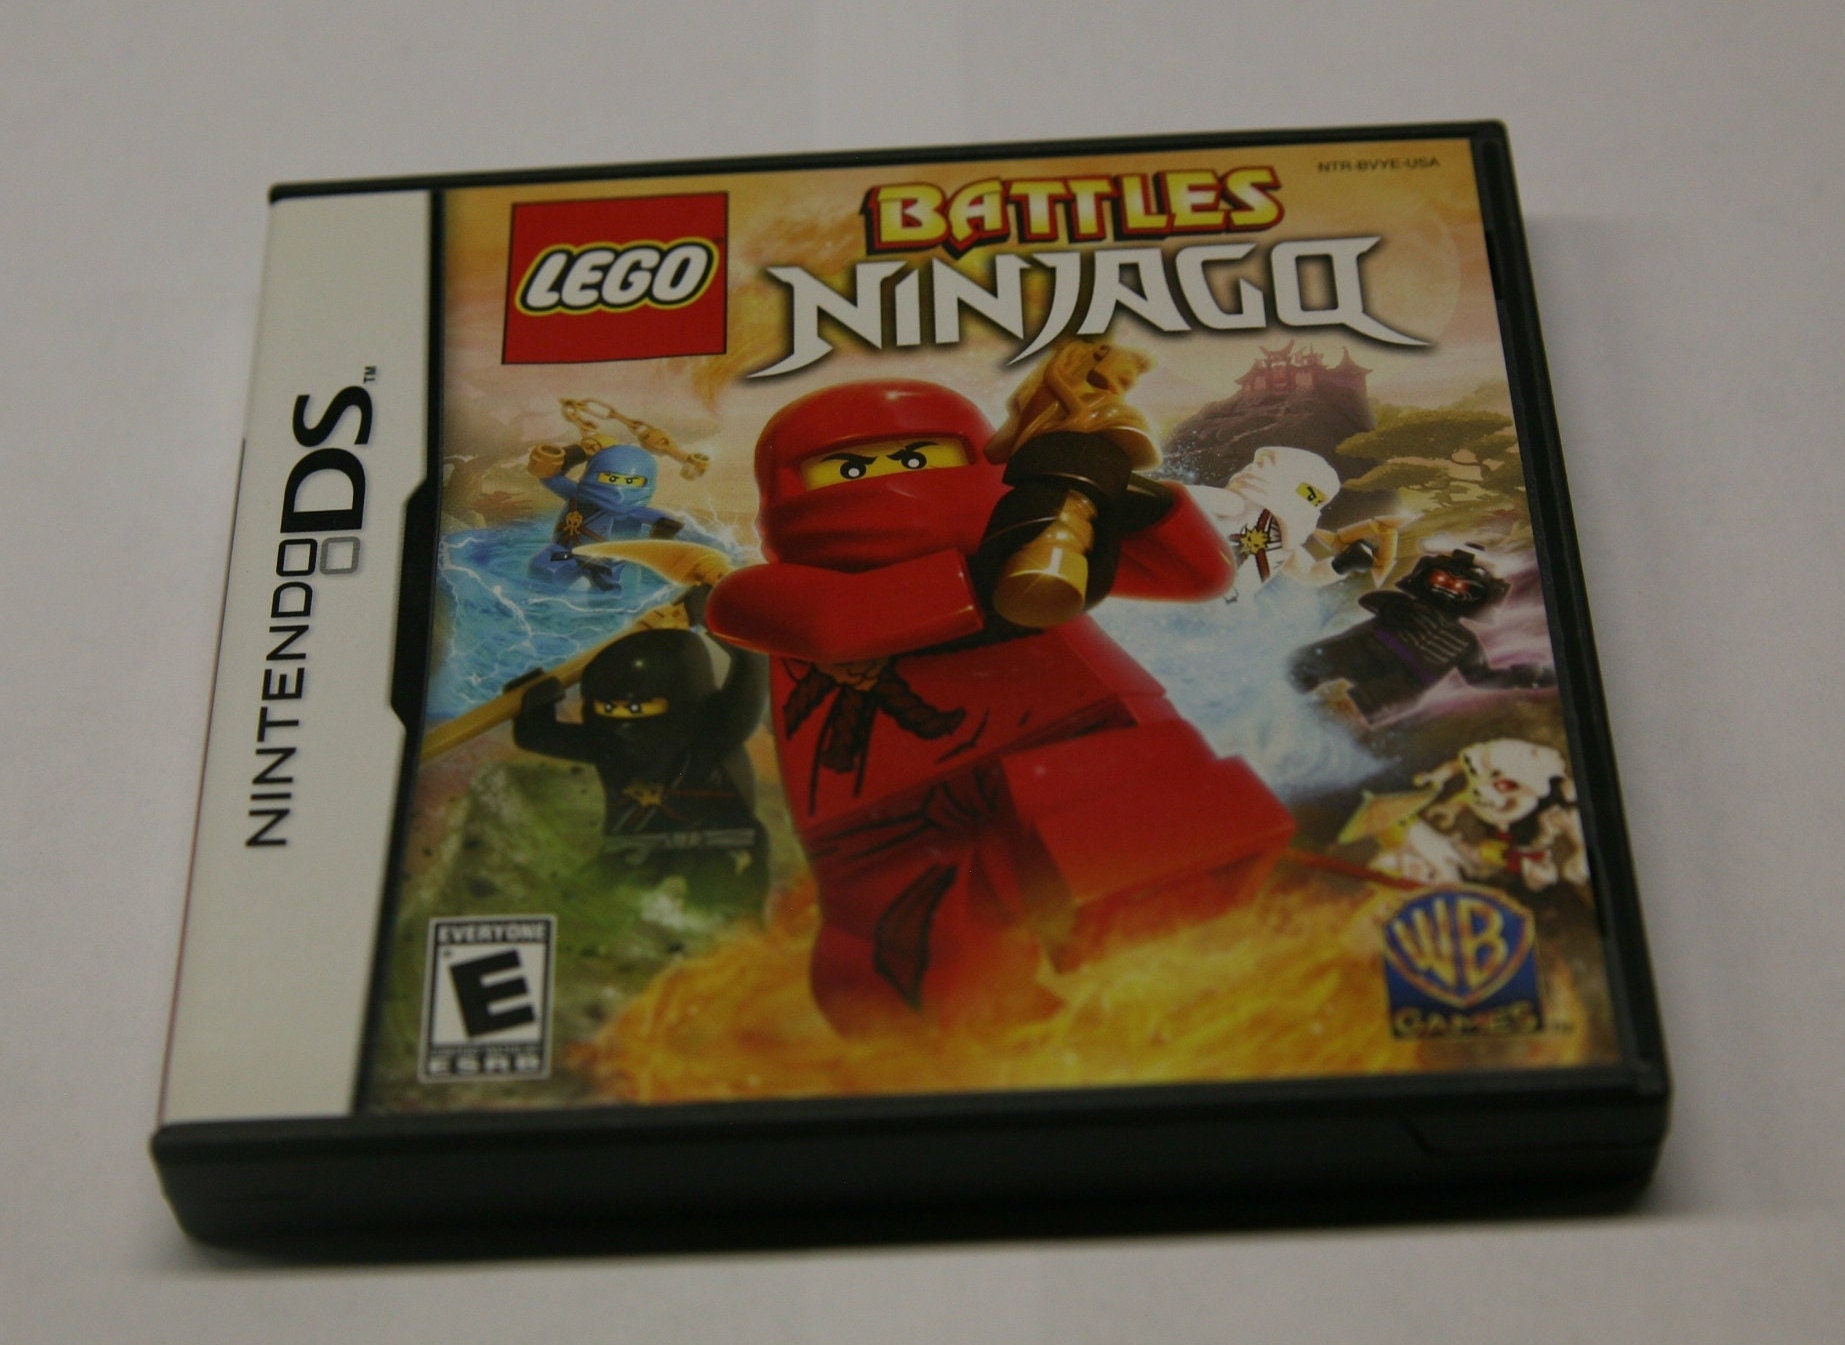 Hoved Entreprenør Overflødig Lego Battles Ninjago Video Game for the Nintendo DS 3DS - Etsy